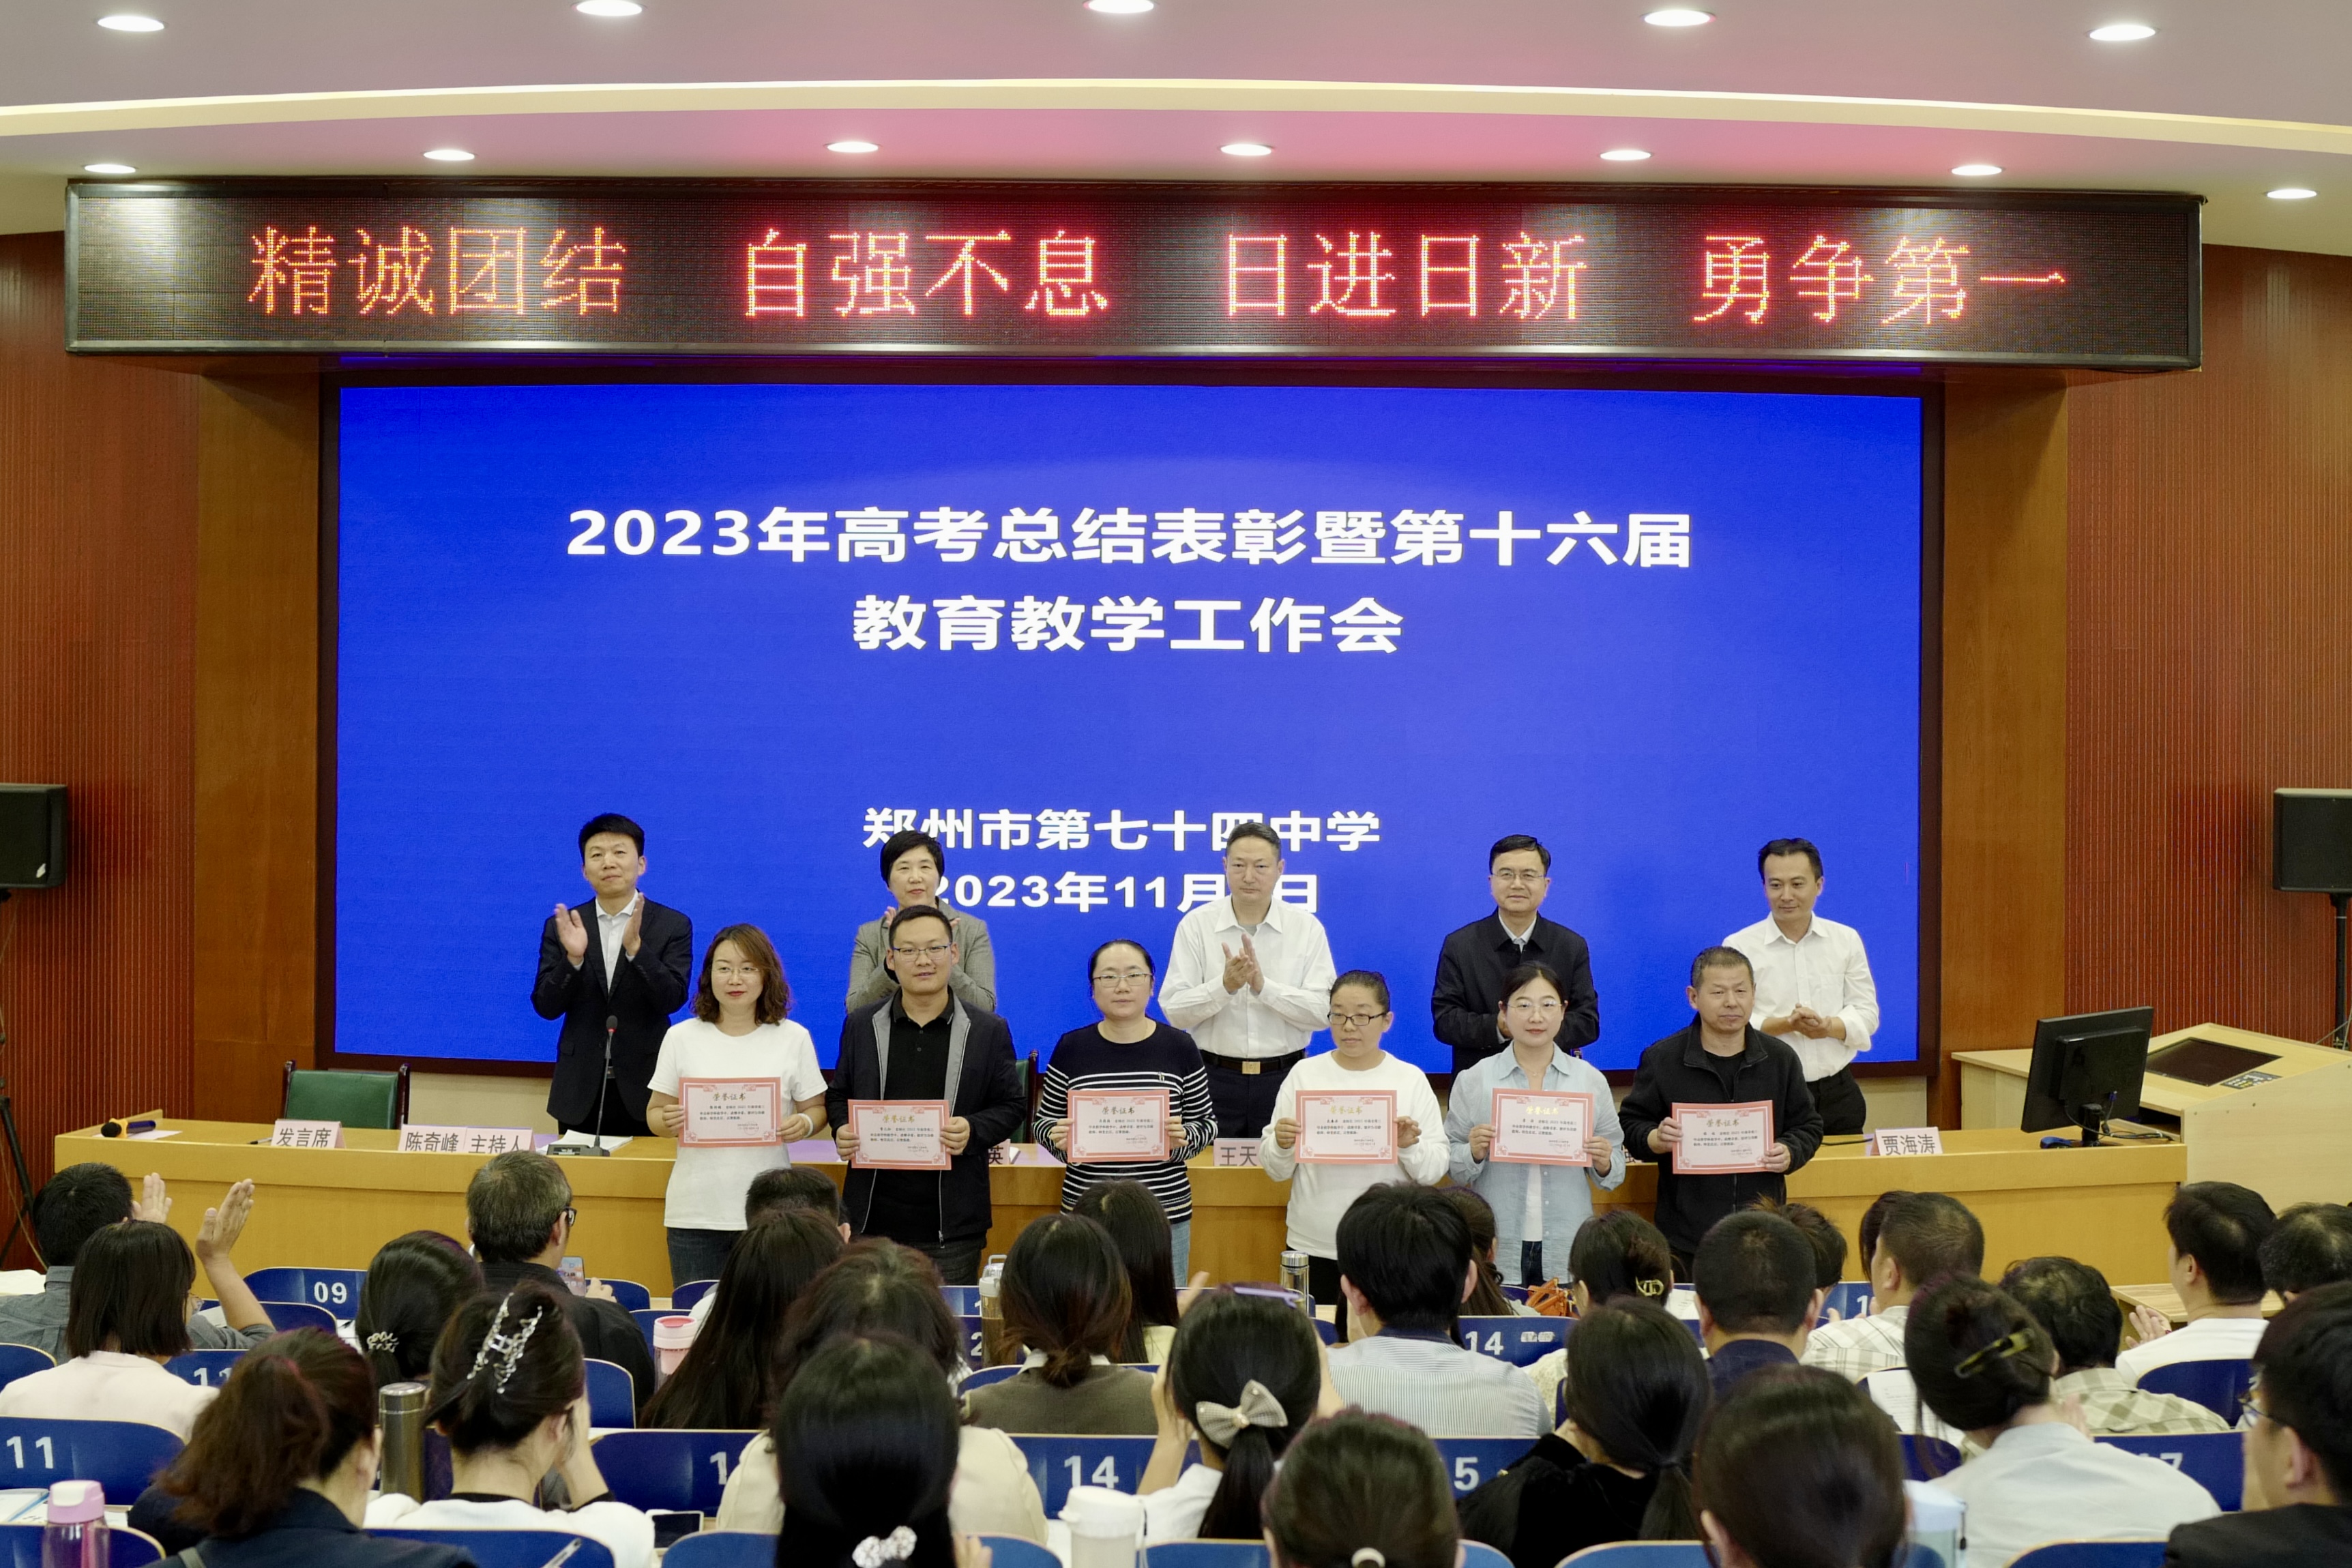 郑州七十四中召开2023年高考总结表彰暨第十六届教育教学工作会